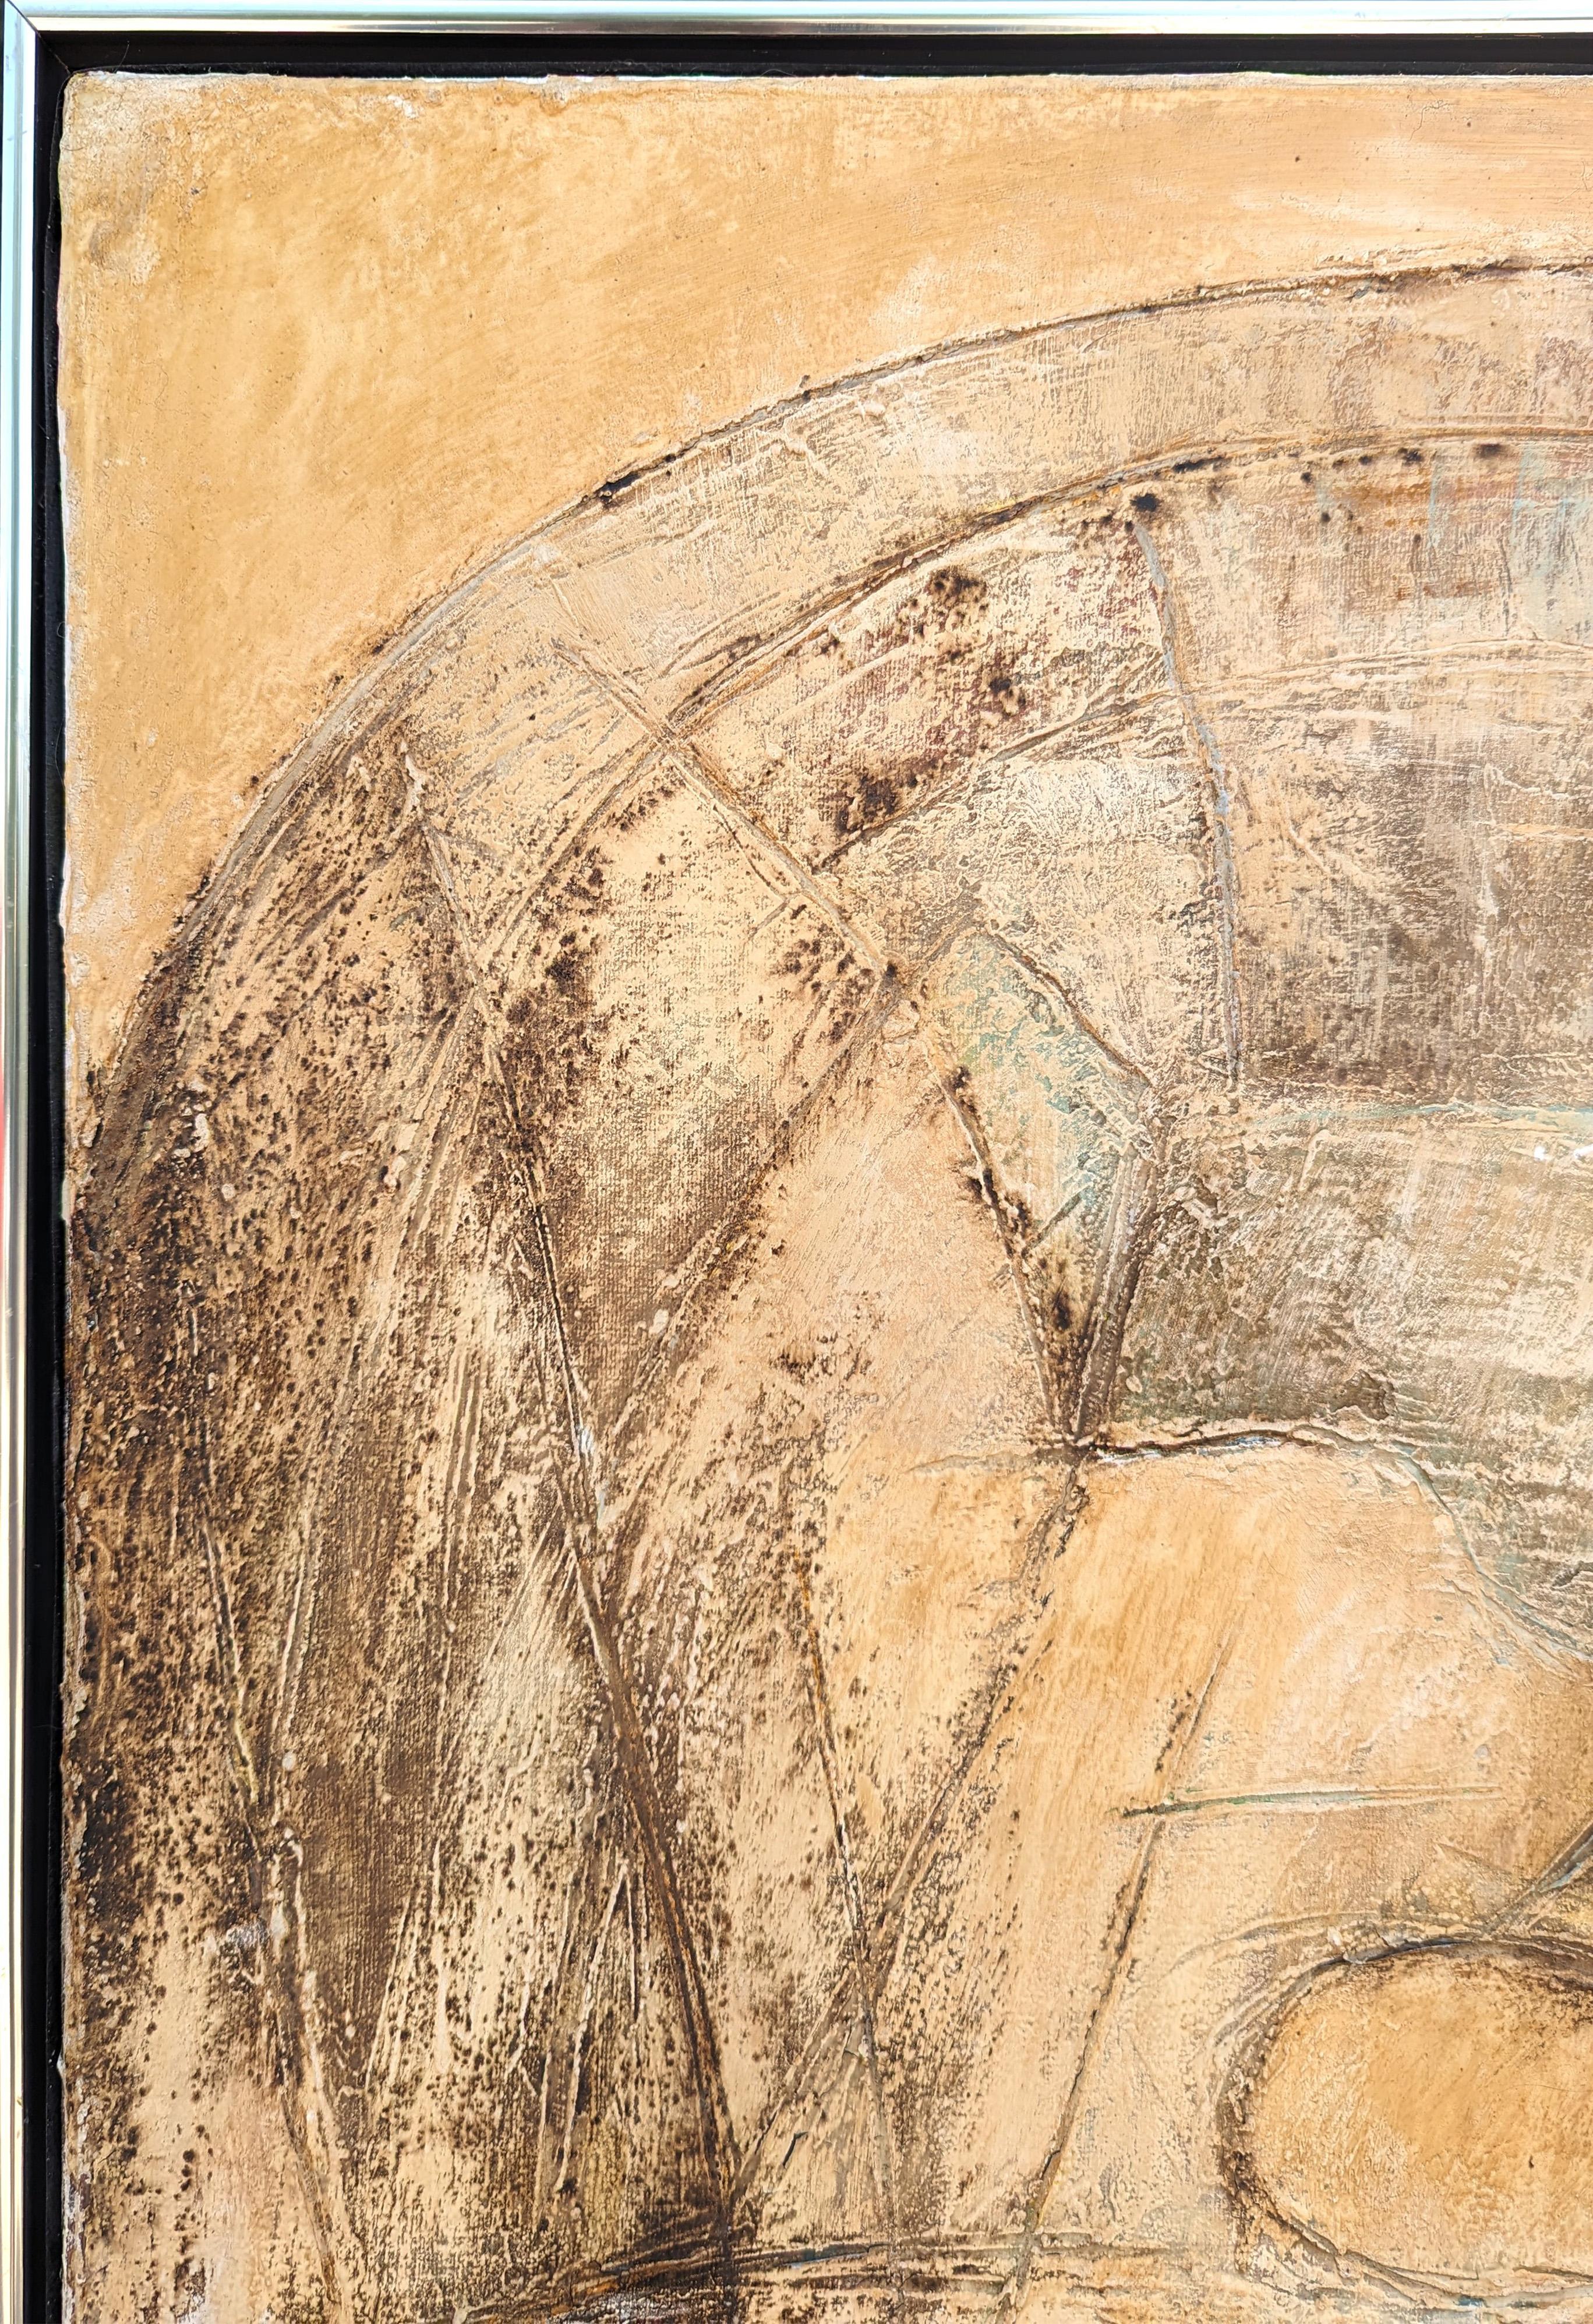 Moderne expressive abstrakte Malerei des mexikanischen Künstlers Juan Sanchez-Juarez. Das Werk zeigt ein hellbraunes und cremefarbenes Feld mit großen geometrischen Formen, die durcheinander gewirbelt sind. Signiert vom Künstler in der rechten